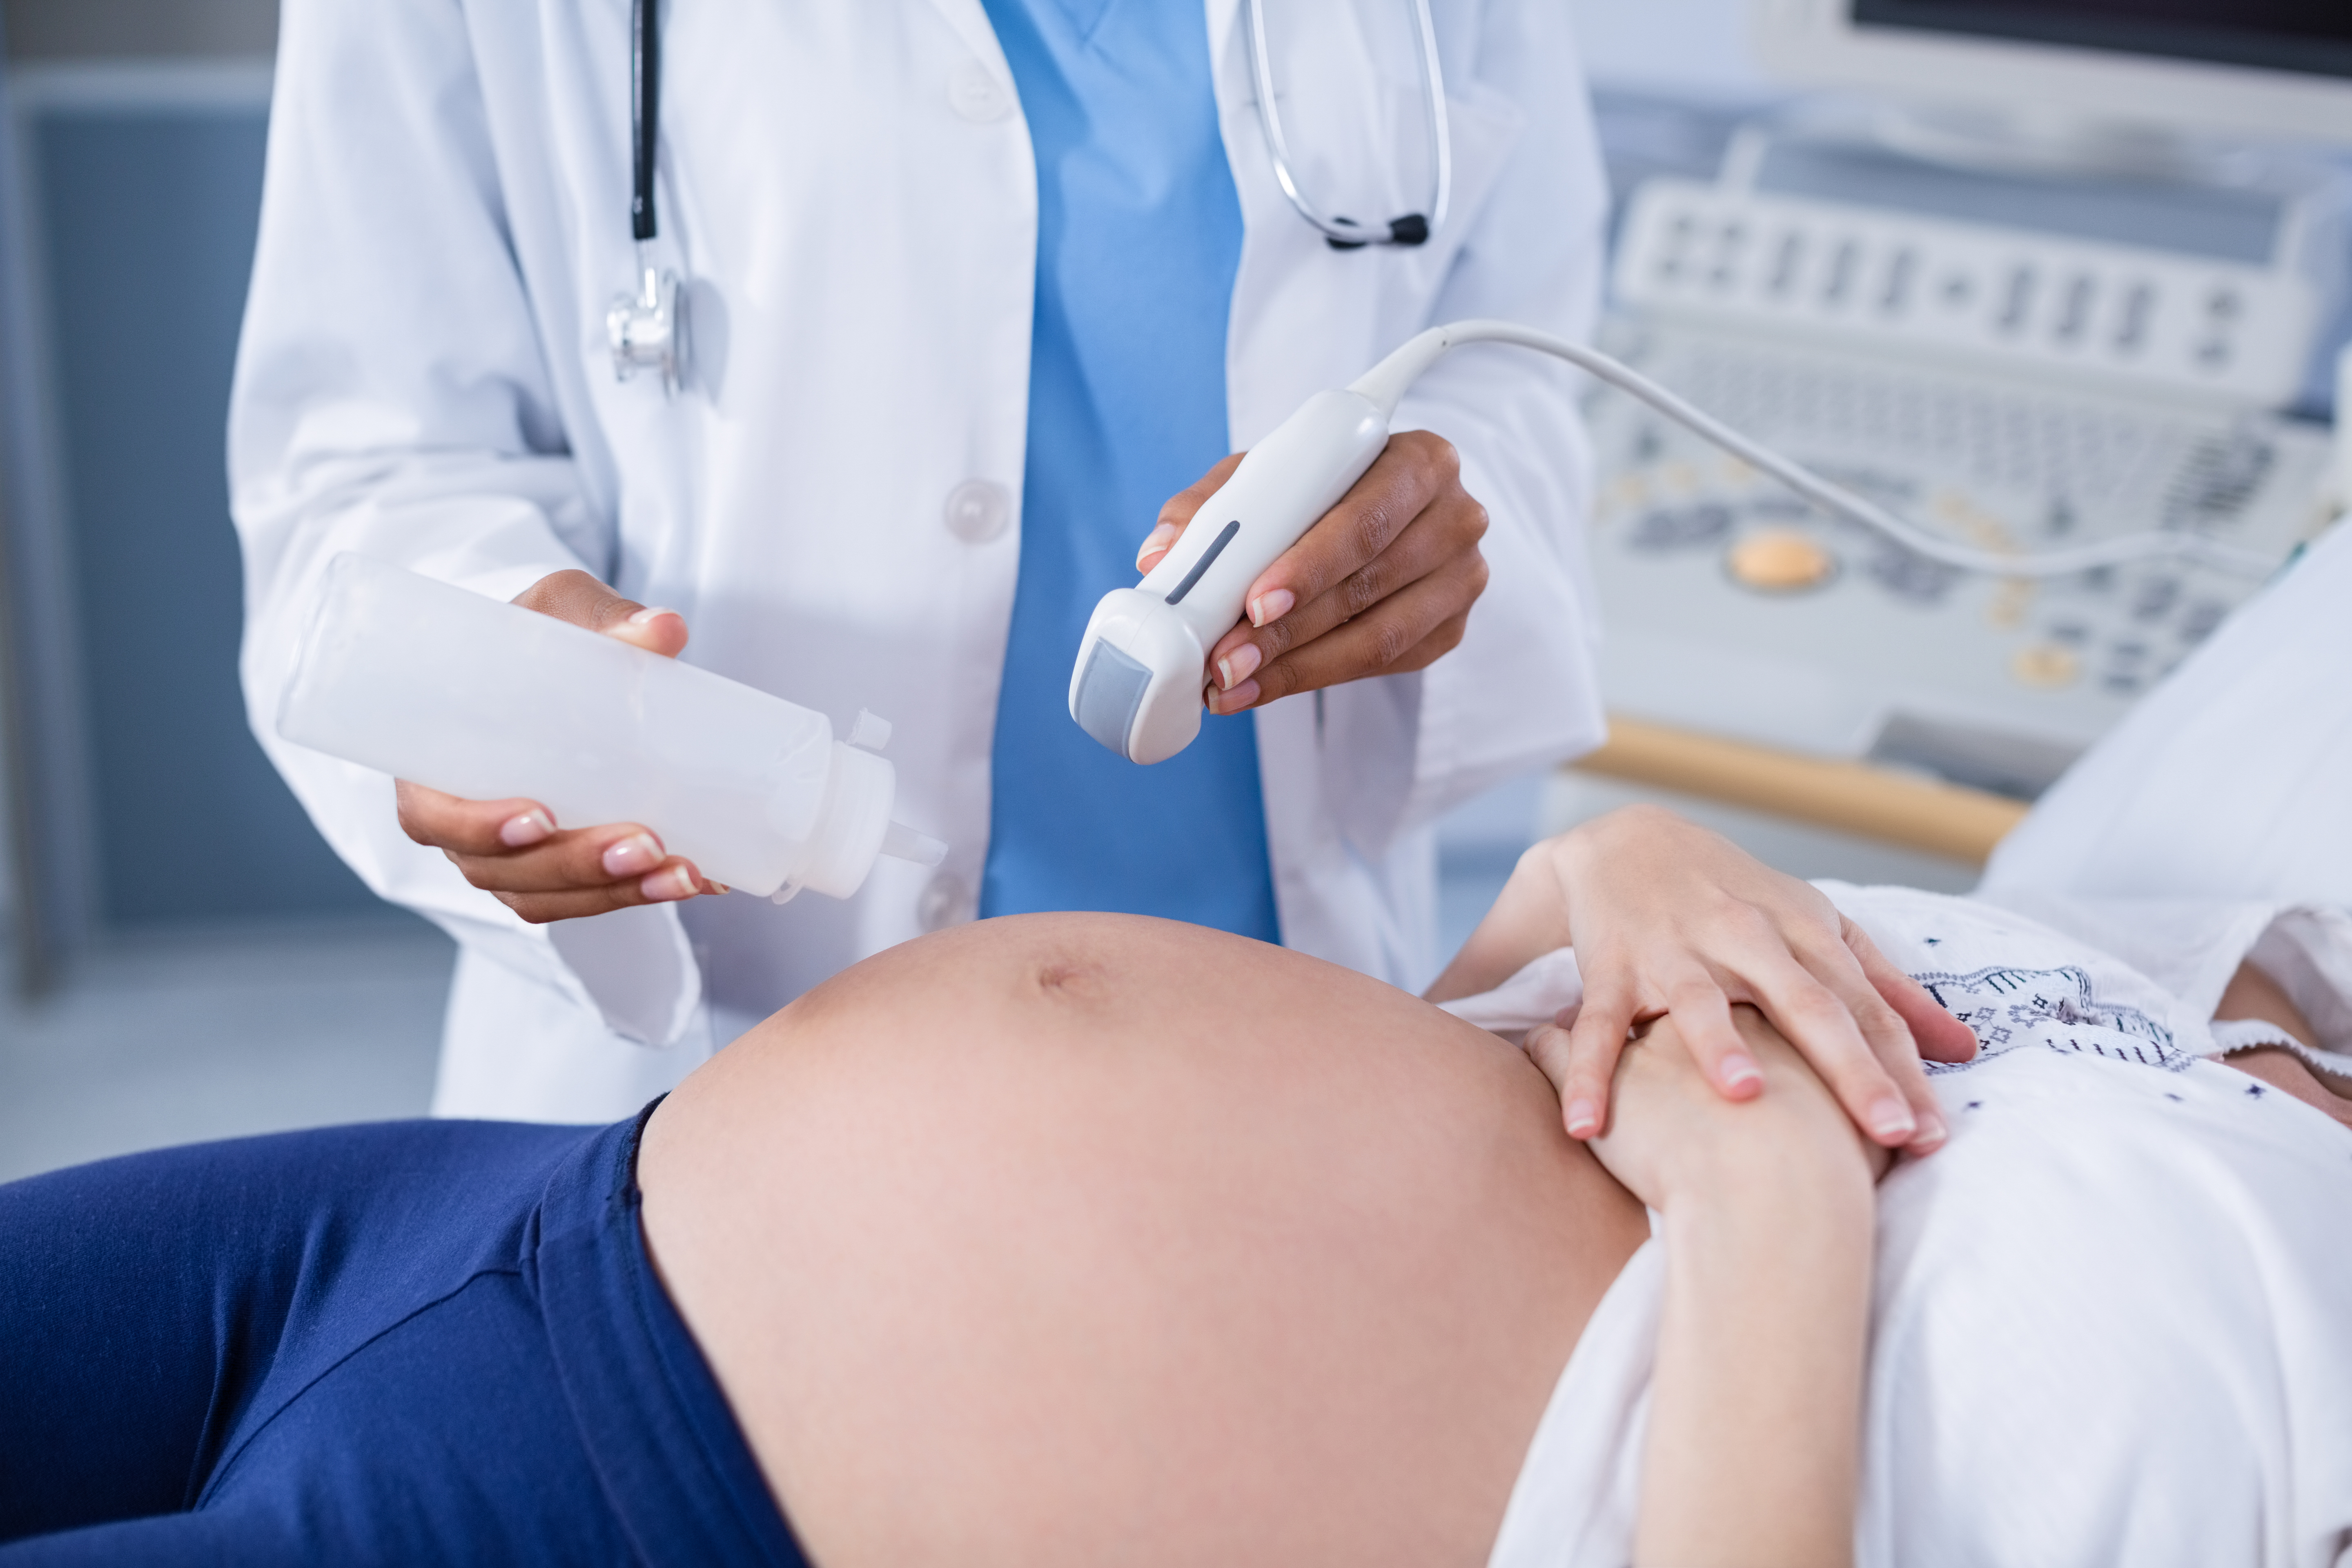 imagen medico realizando ecografía mujer embarazada